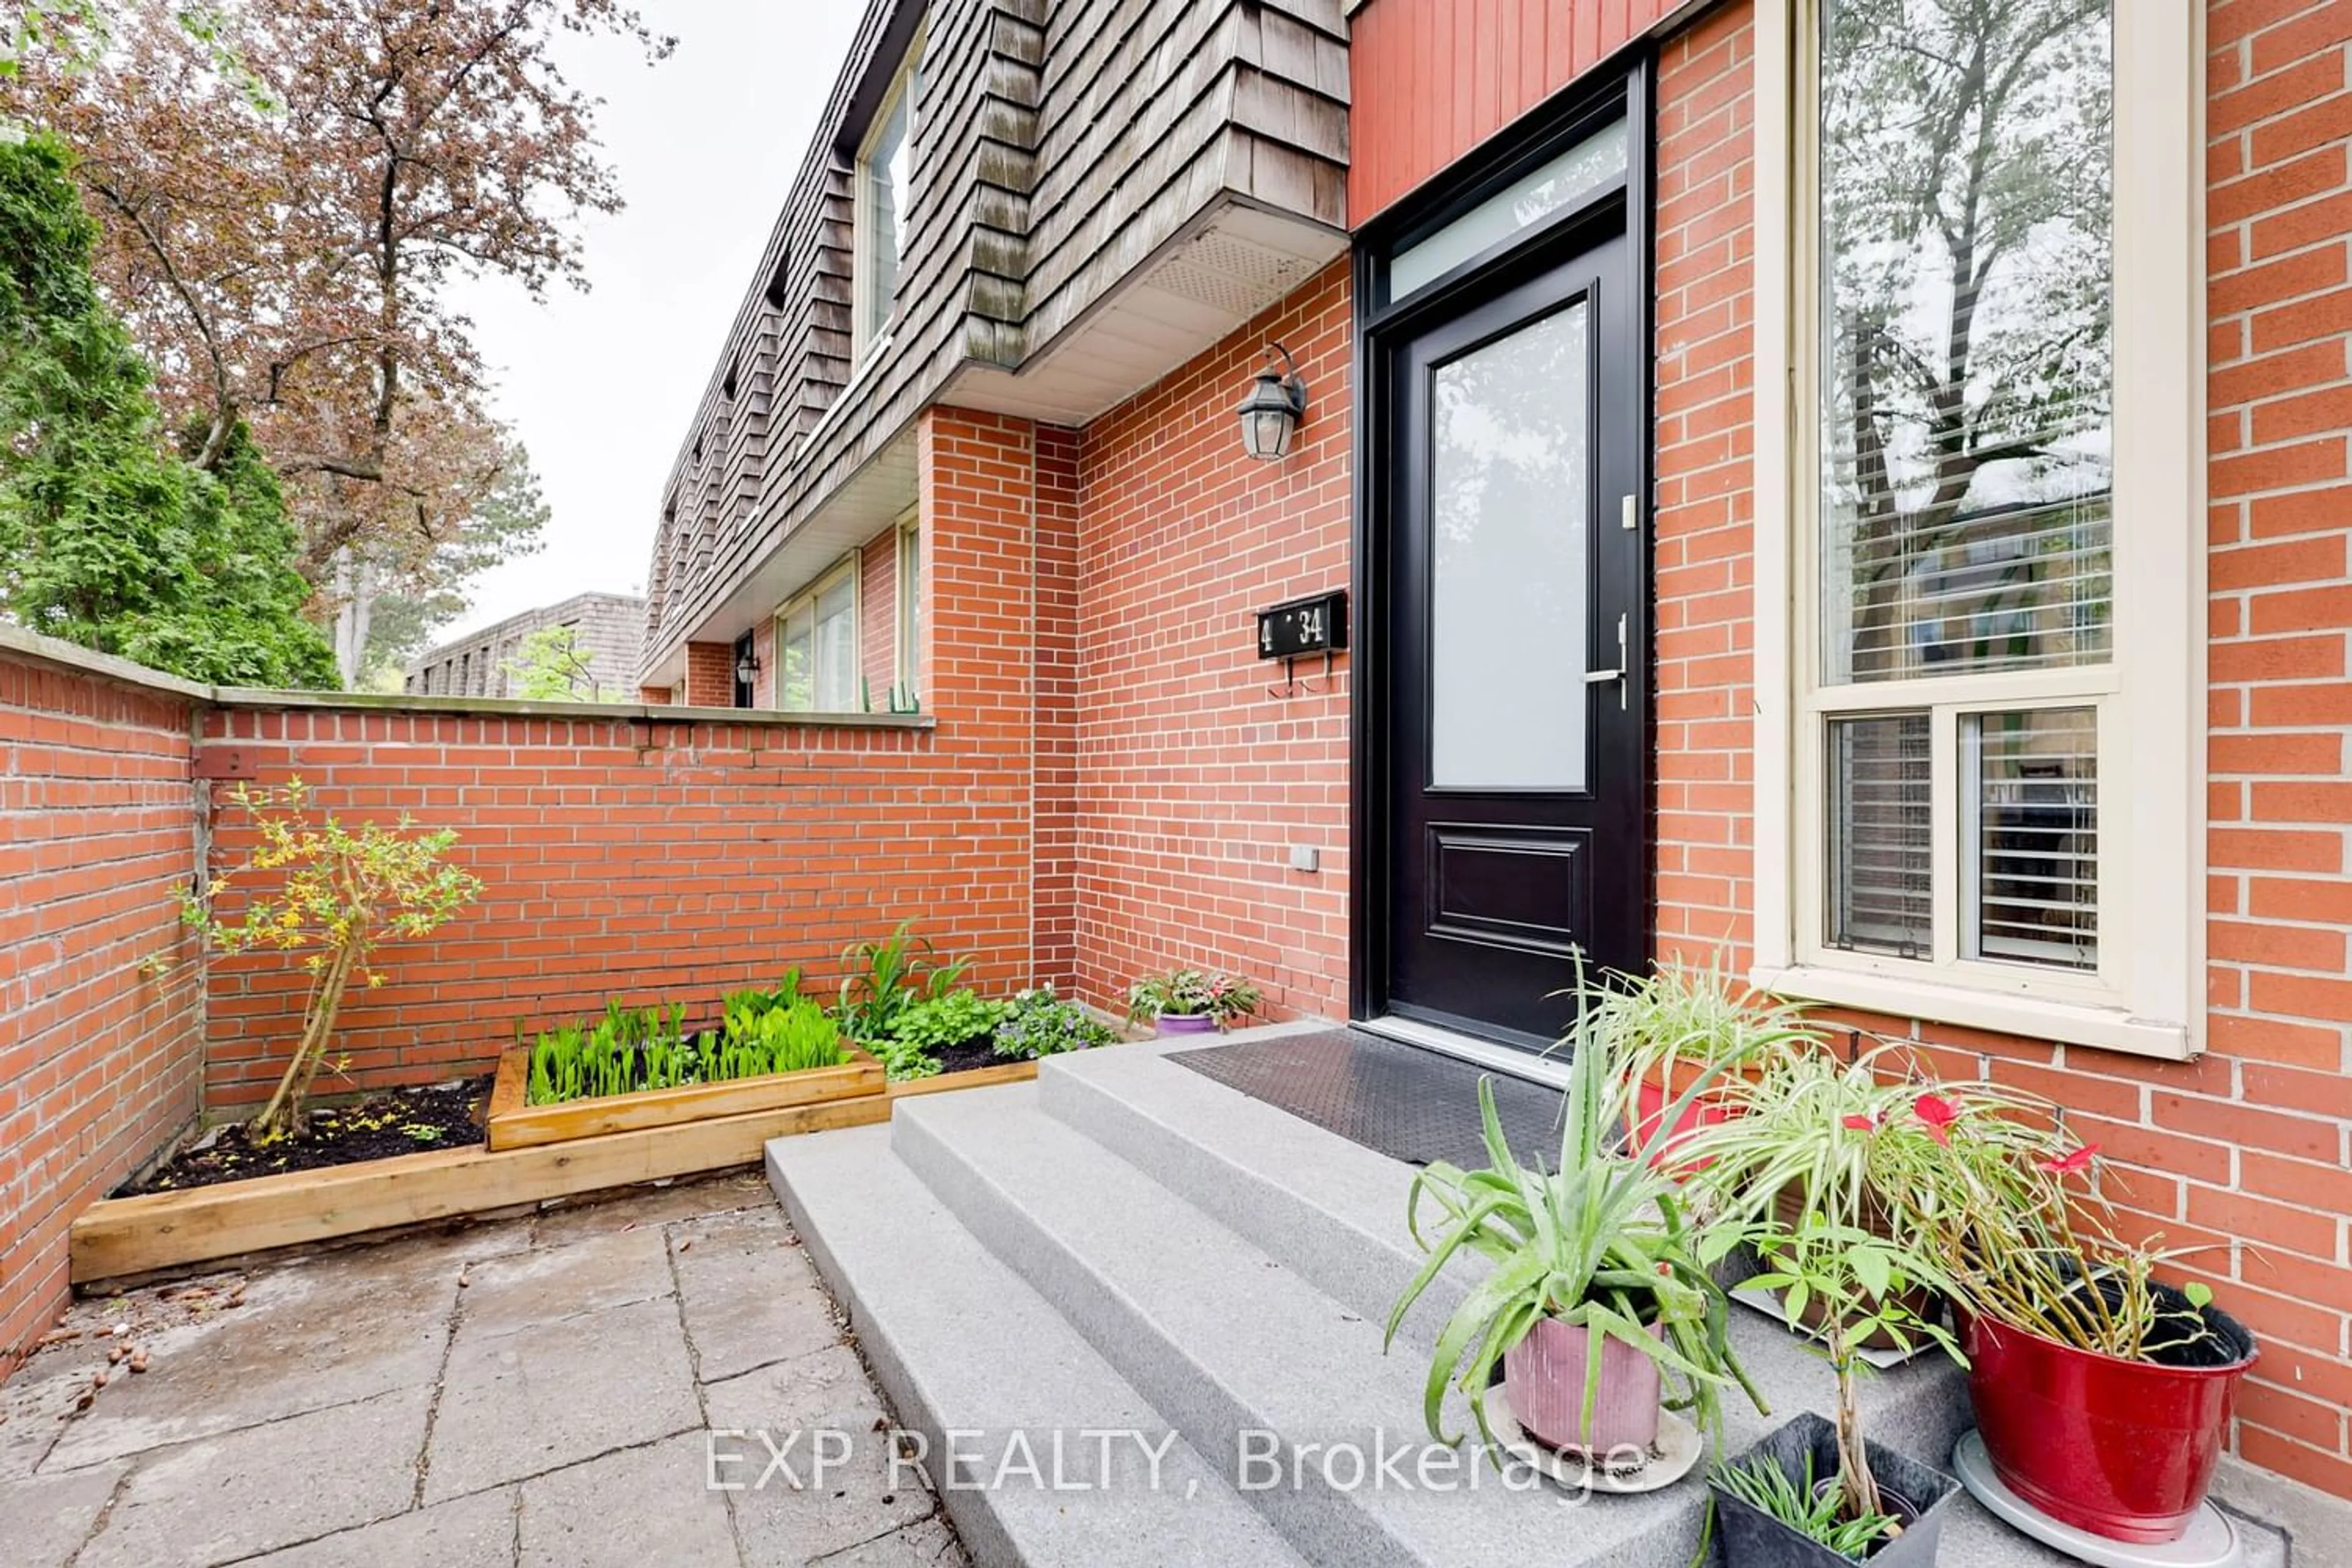 Home with brick exterior material for 34 Yorkminster Rd #4, Toronto Ontario M2P 2A4